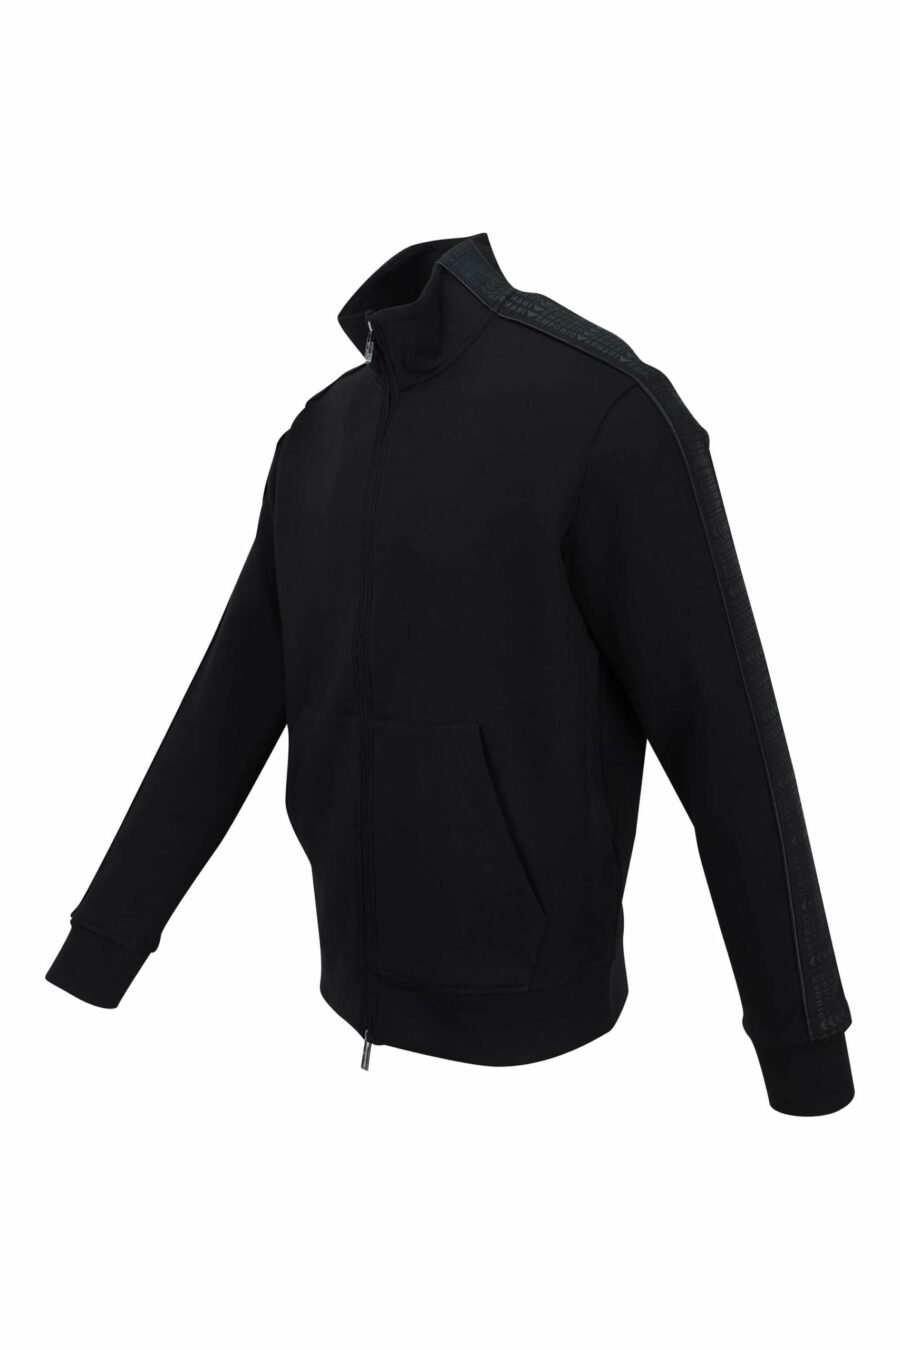 Schwarzes Rollkragen-Sweatshirt mit Seitenstreifen und Mini-Logo - 8057767454784 1 skaliert